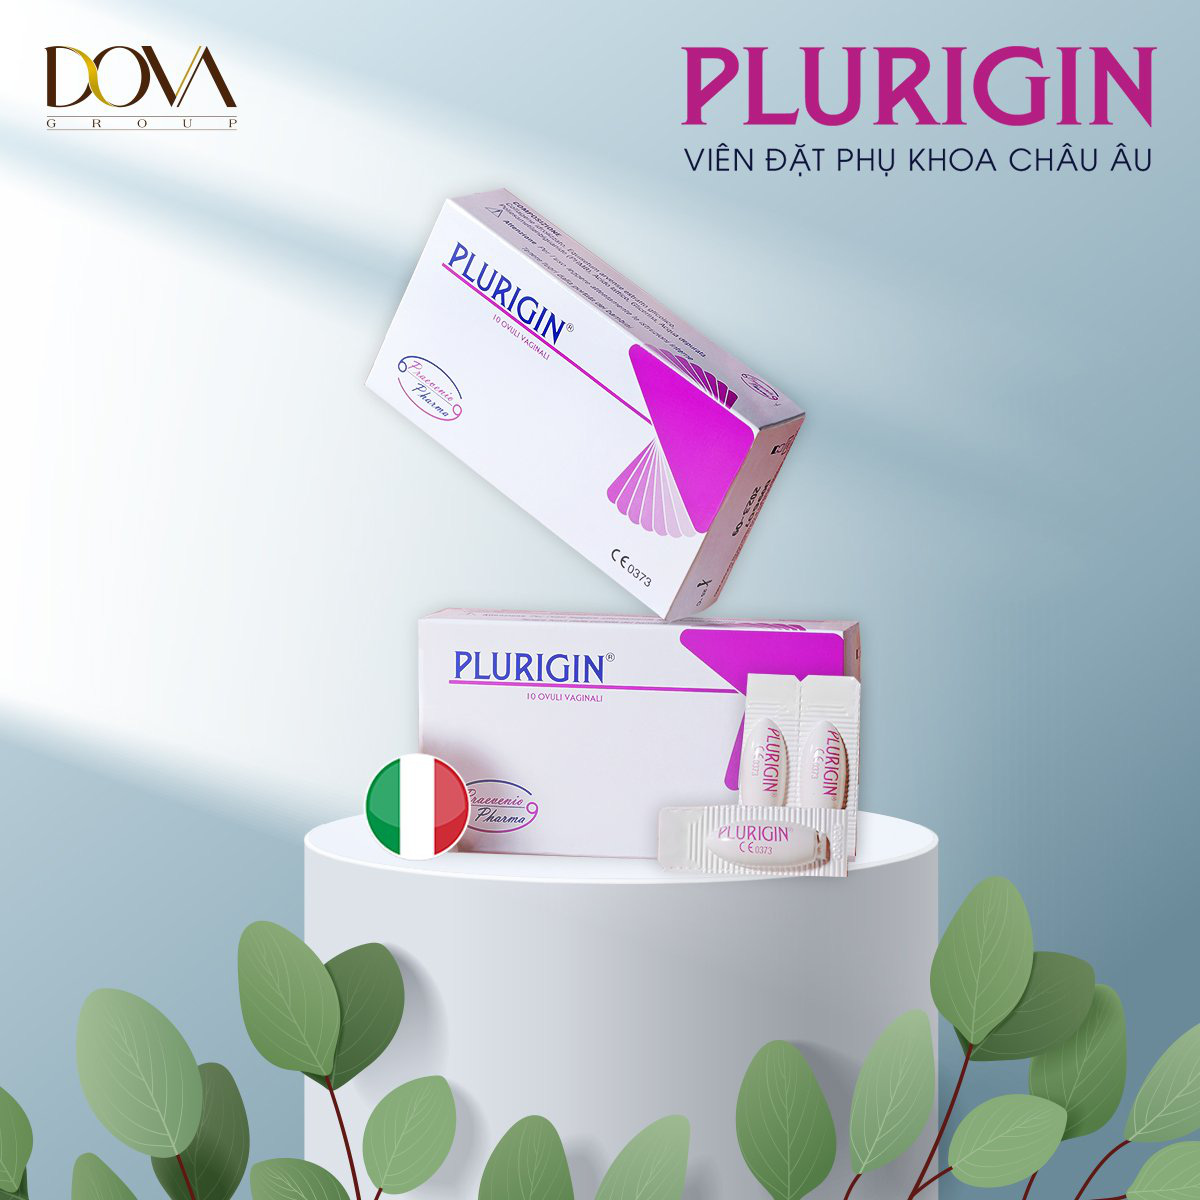 Hiểu thêm về Plurigin - Viên đặt điều trị bệnh phụ khoa tại nhà đến từ Ý - Ảnh 3.